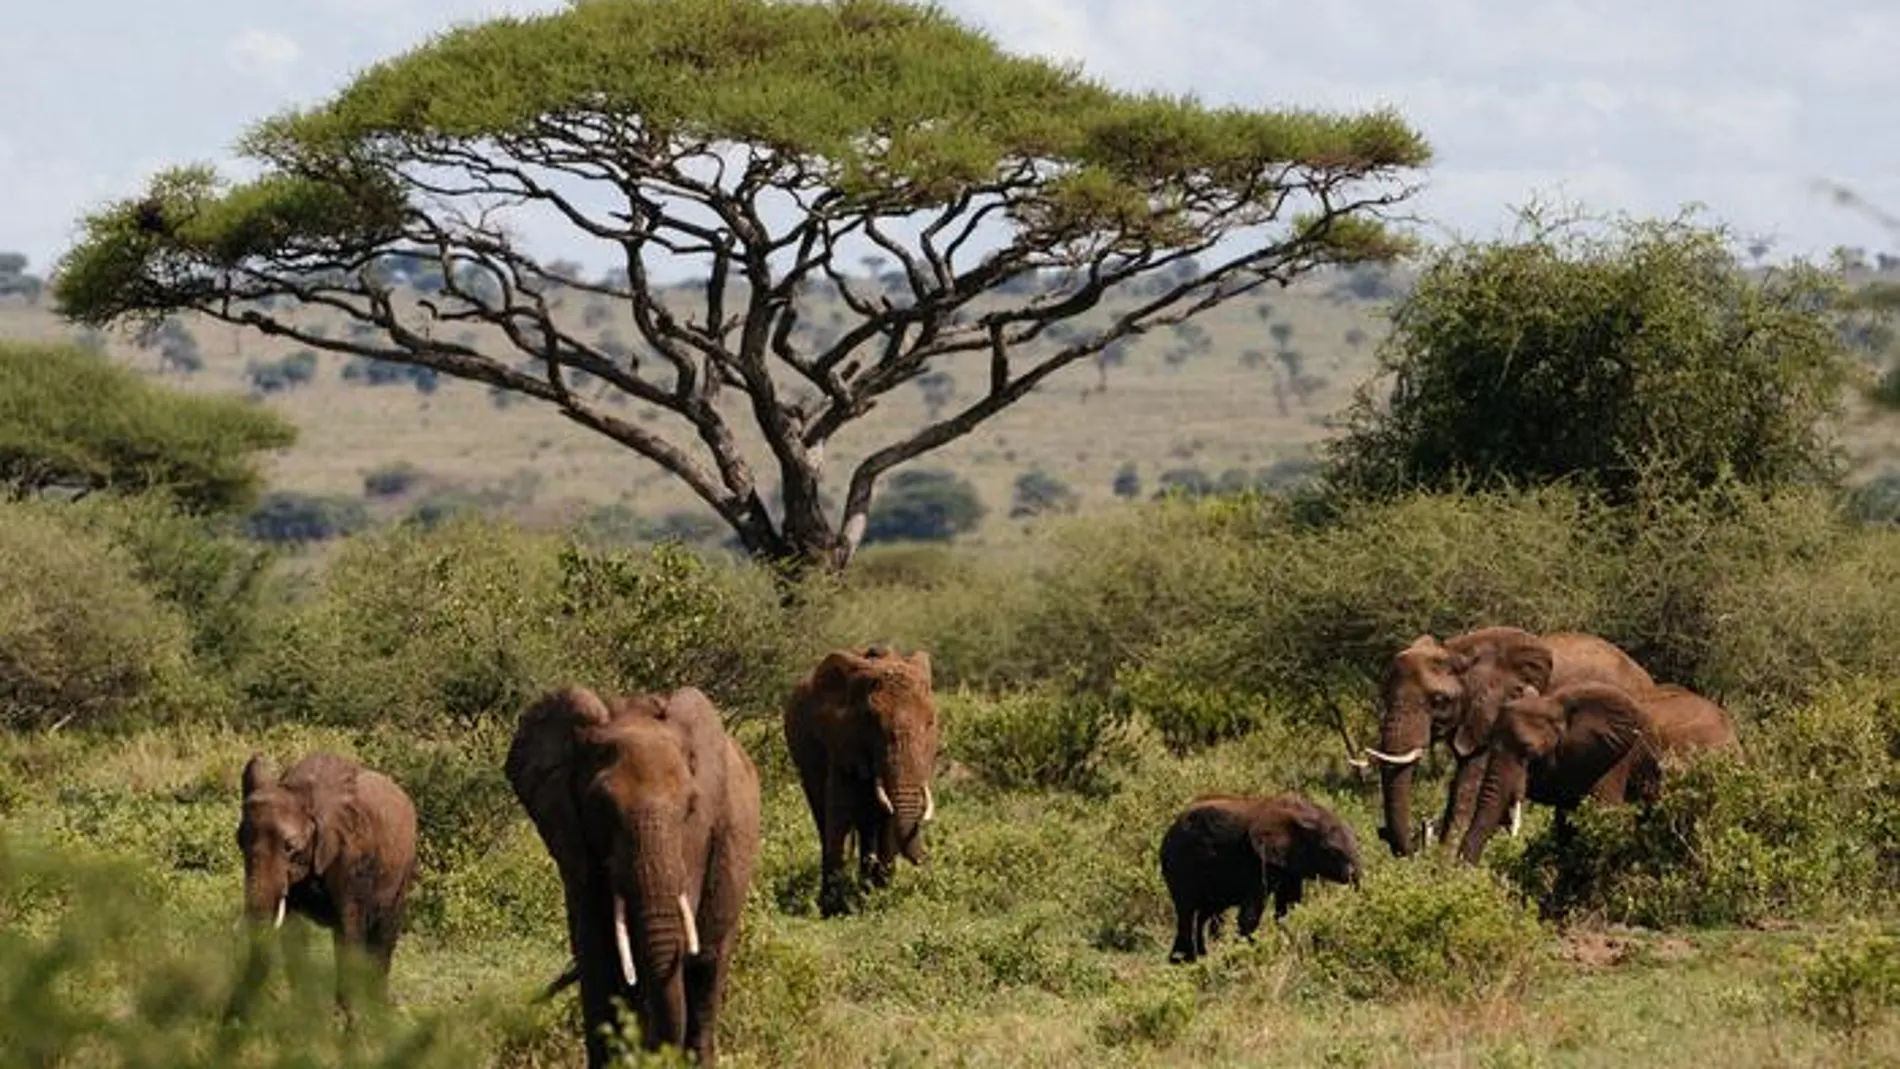 Elefantes (megaherbívoros) en el Parque Nacional de Tarangire, Tanzania, África. La diversidad y la abundancia de estos gigantes era mucho mayor en el pasado que en la actualidad.